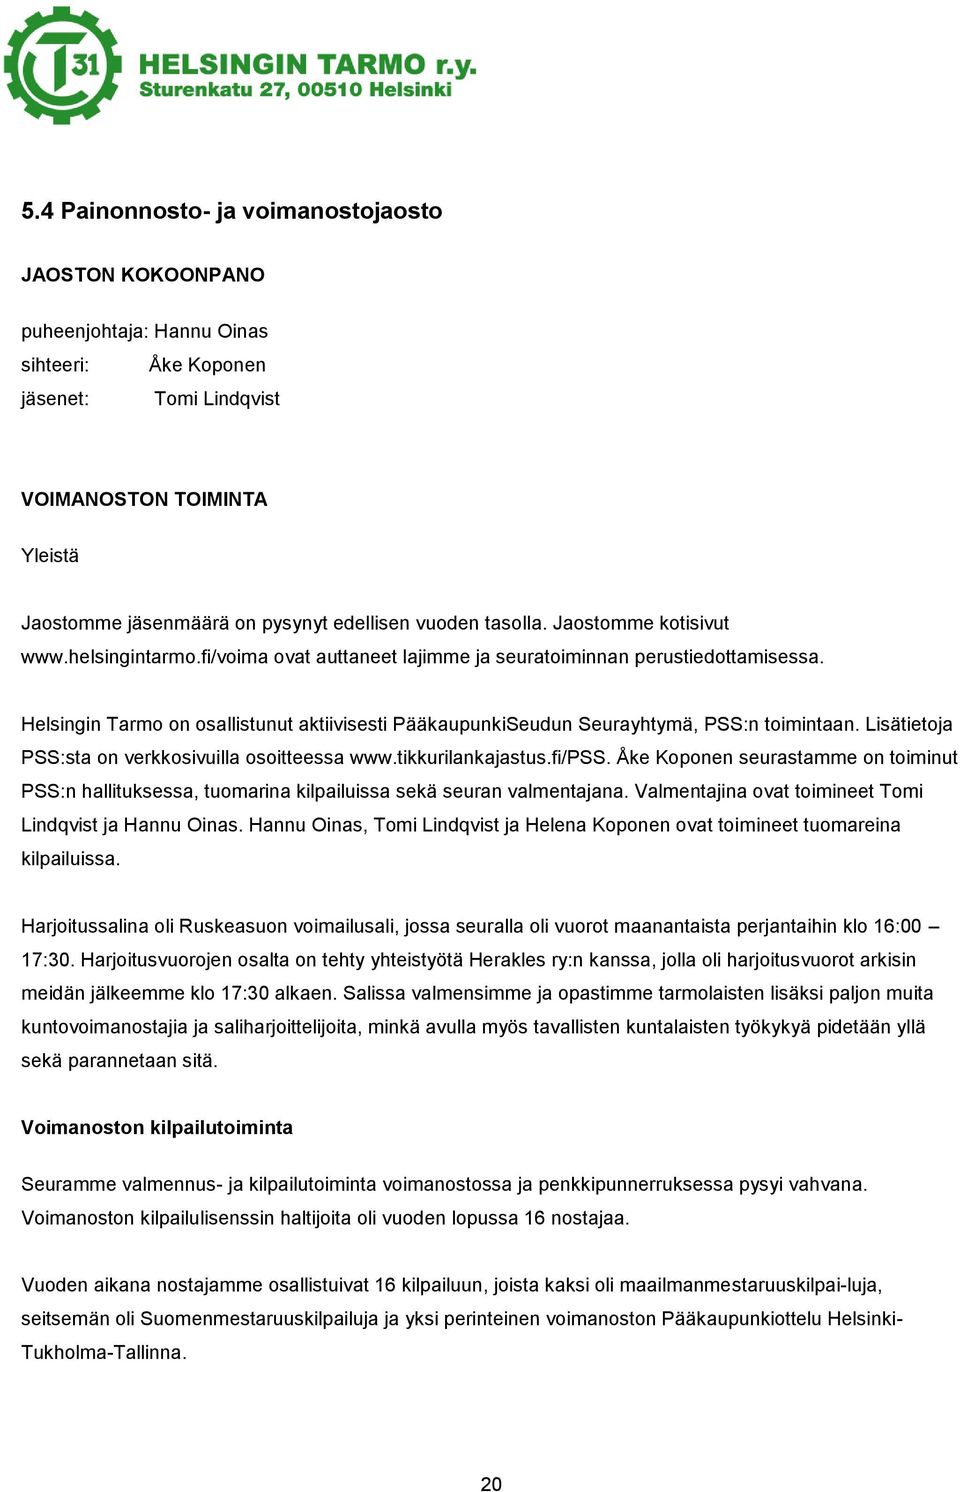 Helsingin Tarmo on osallistunut aktiivisesti PääkaupunkiSeudun Seurayhtymä, PSS:n toimintaan. Lisätietoja PSS:sta on verkkosivuilla osoitteessa www.tikkurilankajastus.fi/pss.